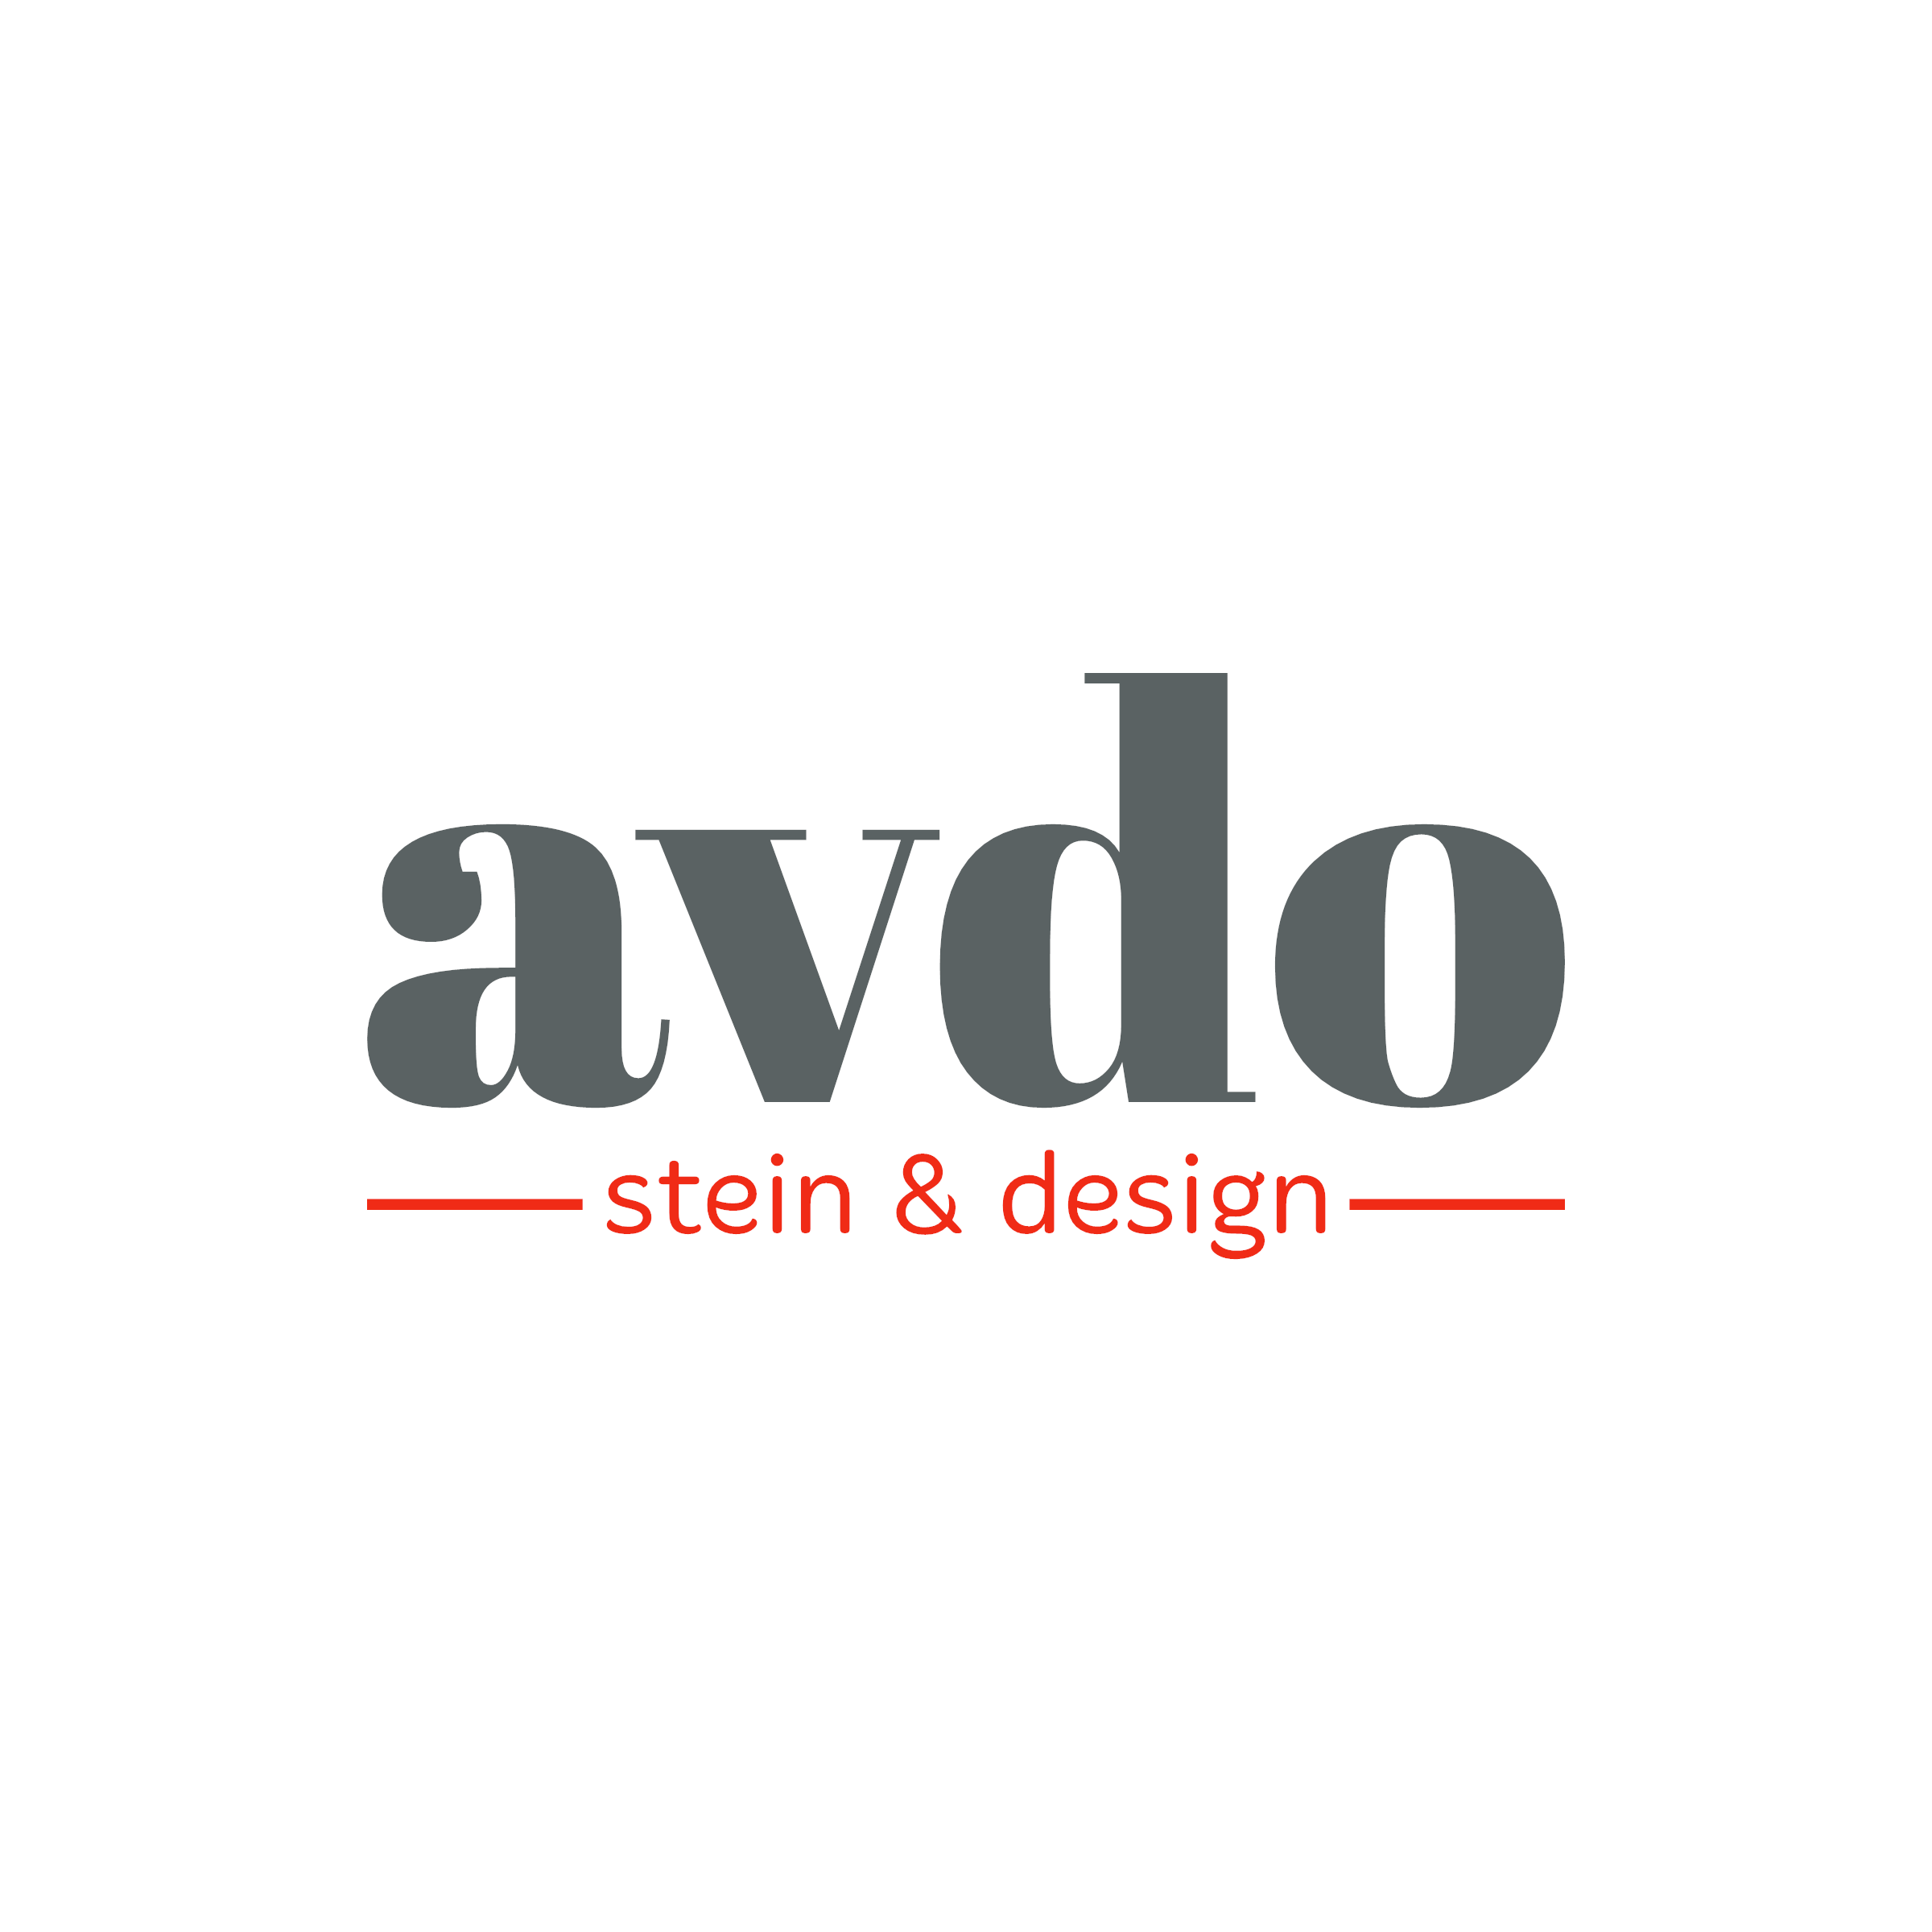 avdo - Stein & Design - Logo